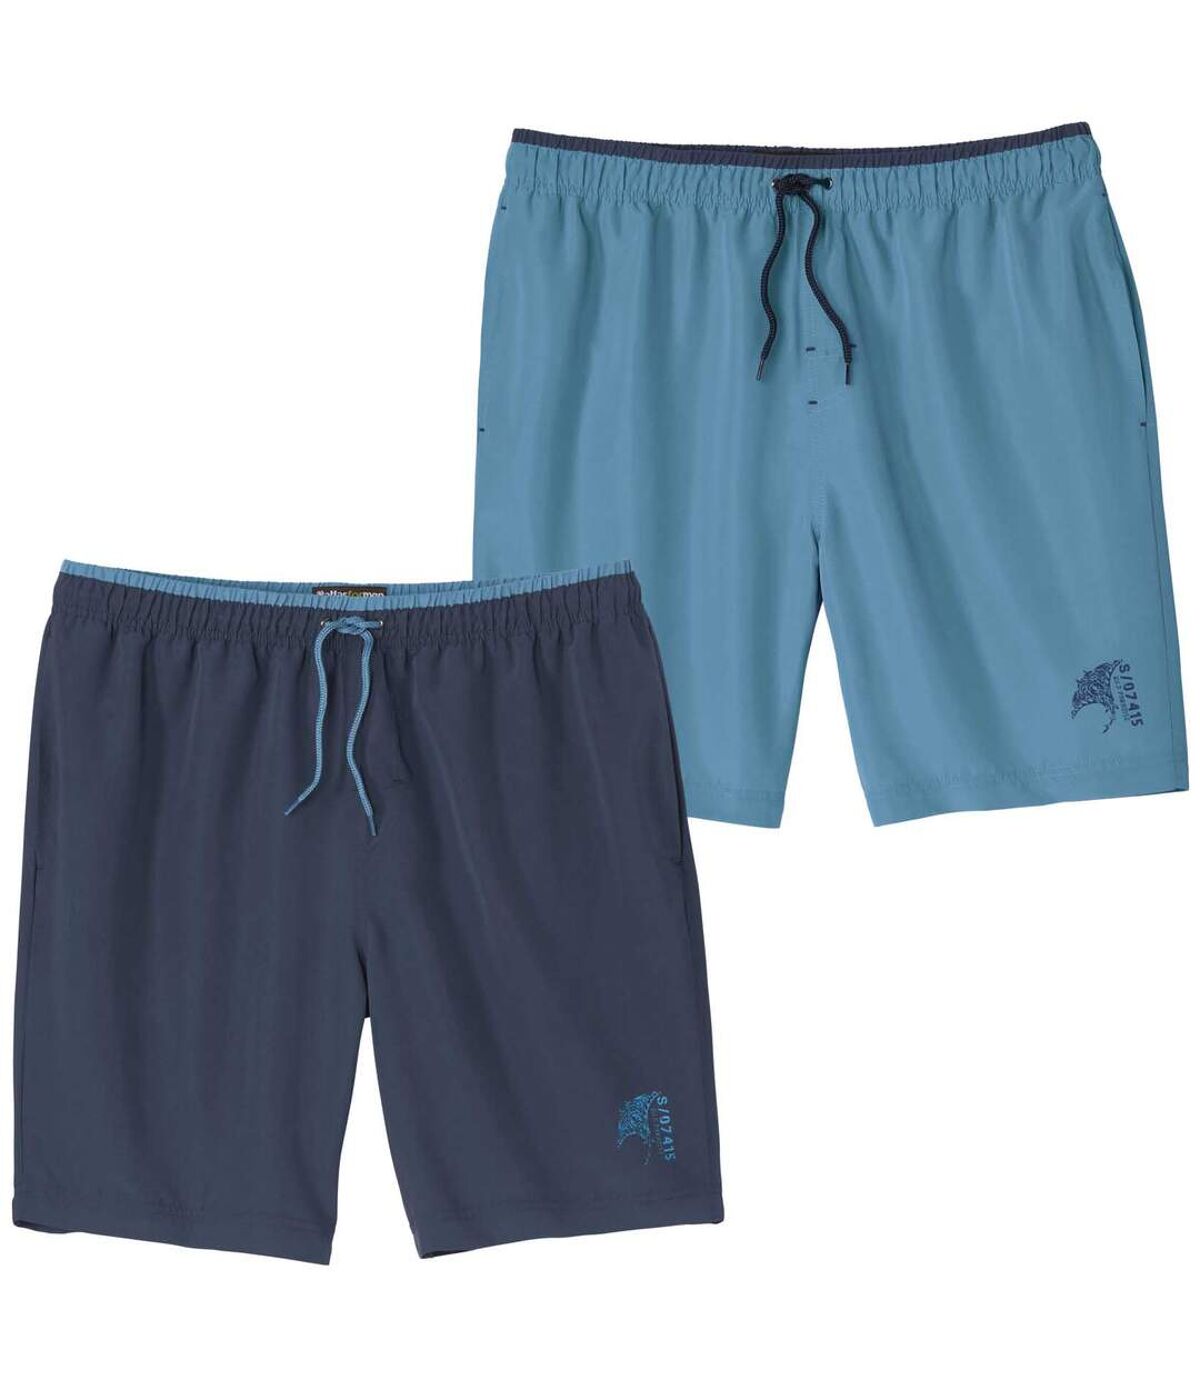 Pack of 2 Men's Swim Shorts - Turquoise Navy  Atlas For Men